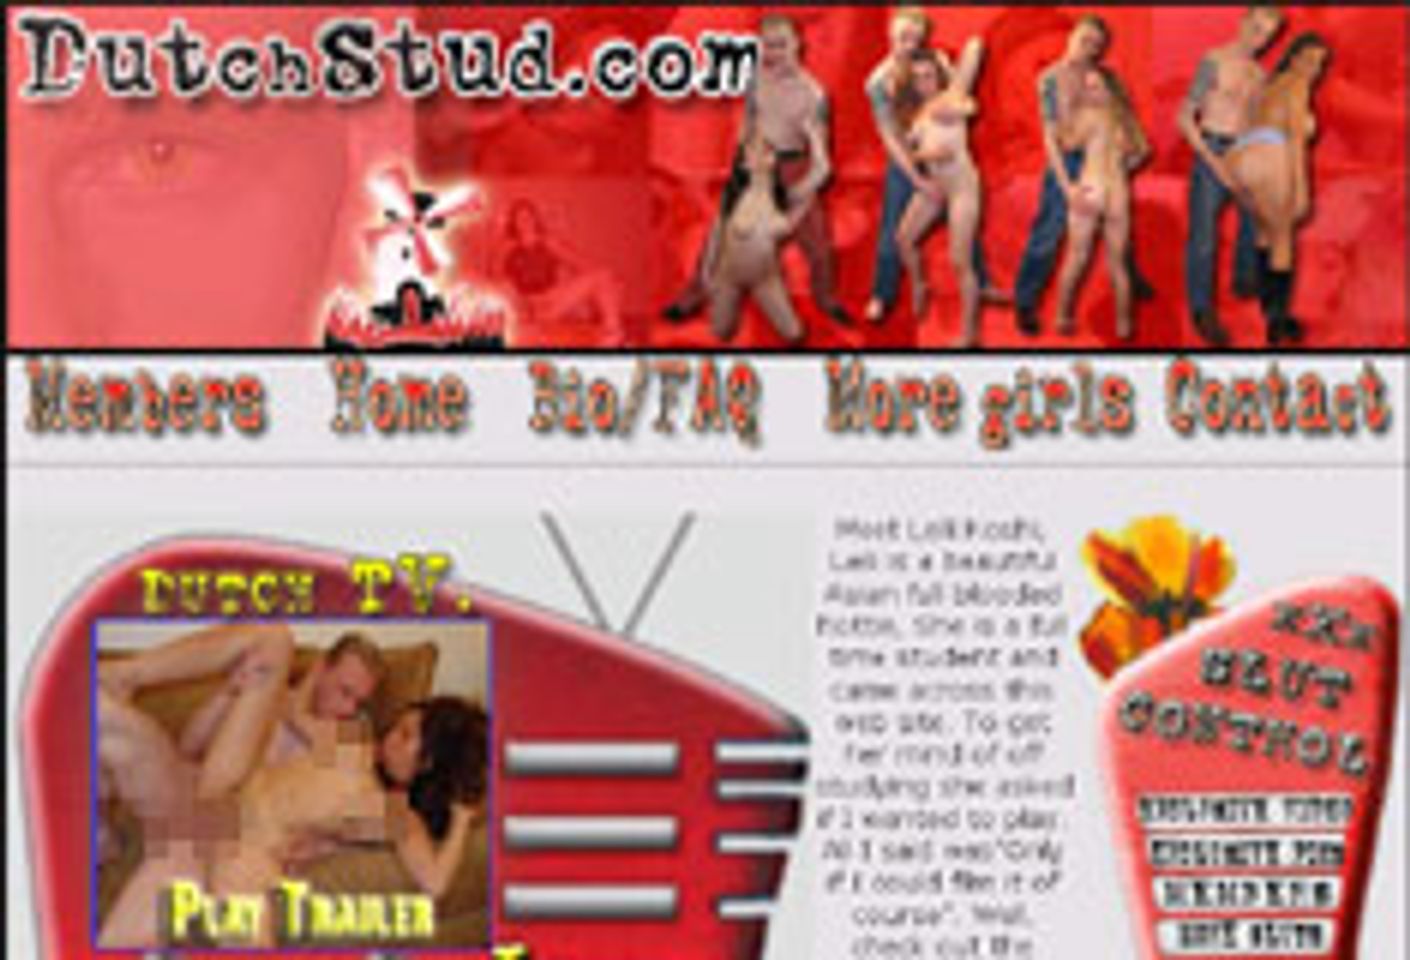 Old Pueblo, DS Productions Launch DutchStud.com - AVN